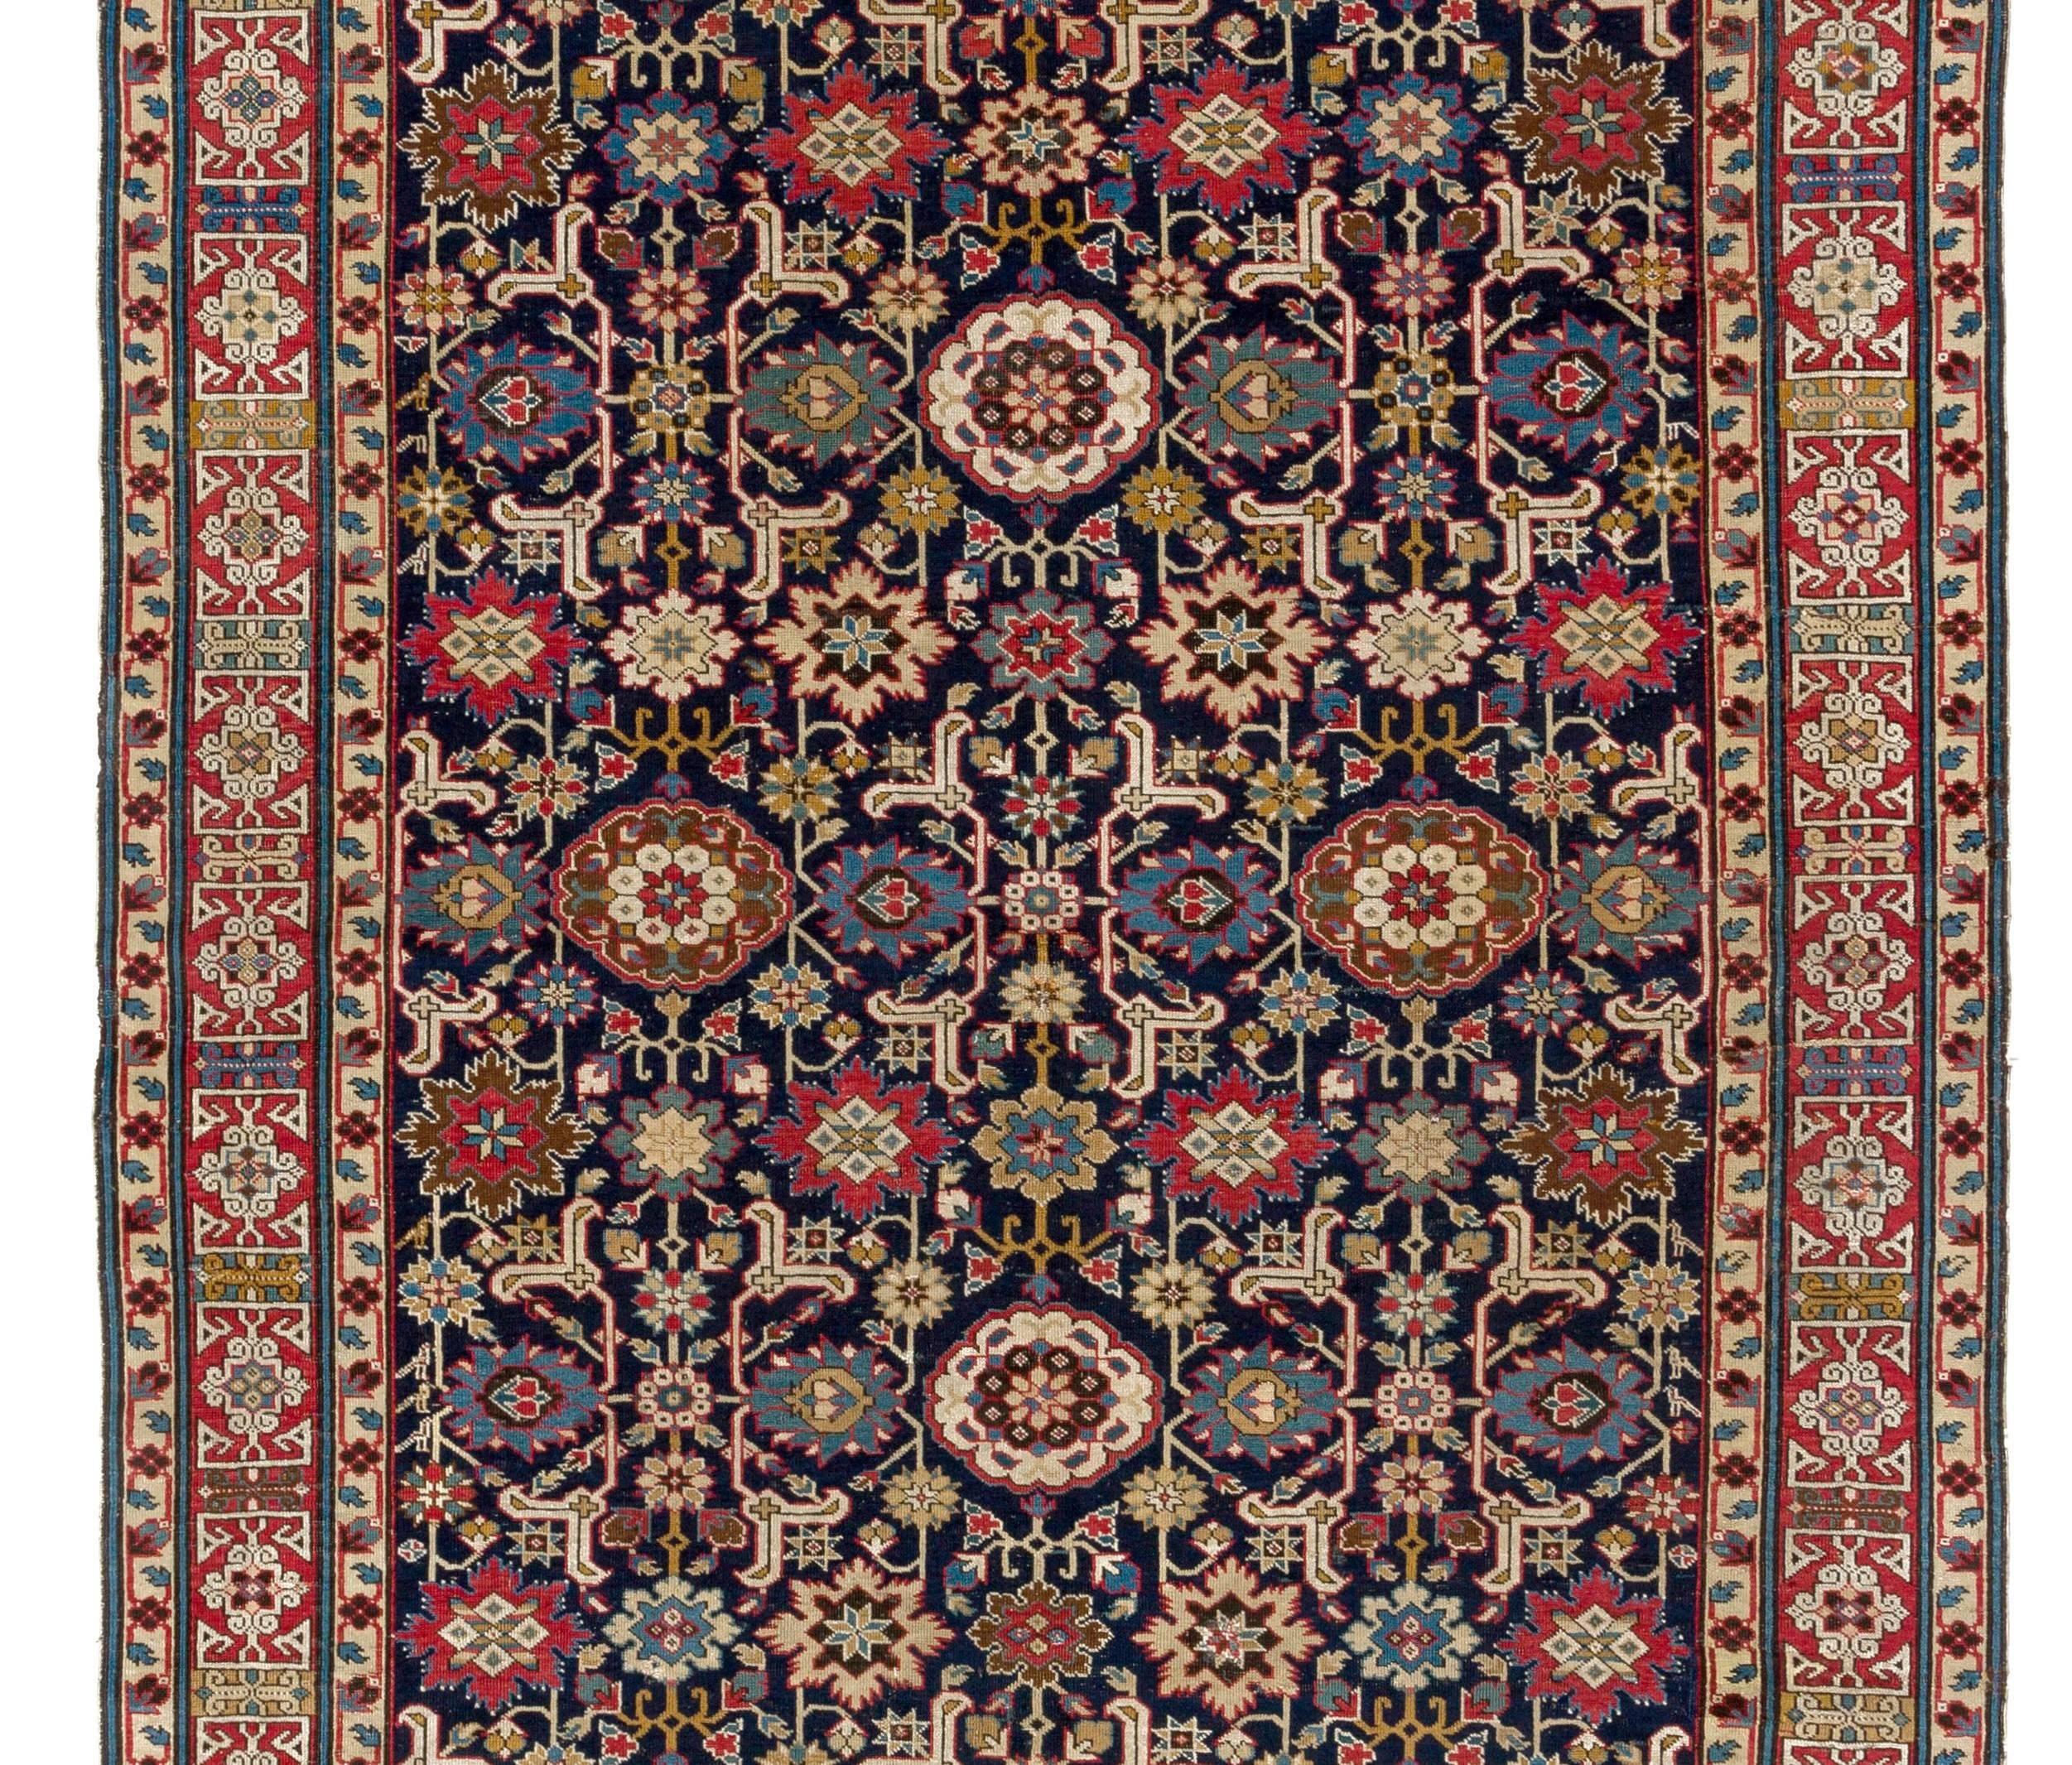 Ein prächtiger Afschan-Kuba-Teppich mit hohem Sammlerwert aus der Zeit um 1840. Er gehört zu einer Familie bedeutender Teppiche, die im Nordkaukasus im Auftrag von Palästen und wohlhabenden Haushalten gewebt wurden. Ihre Inspiration für die